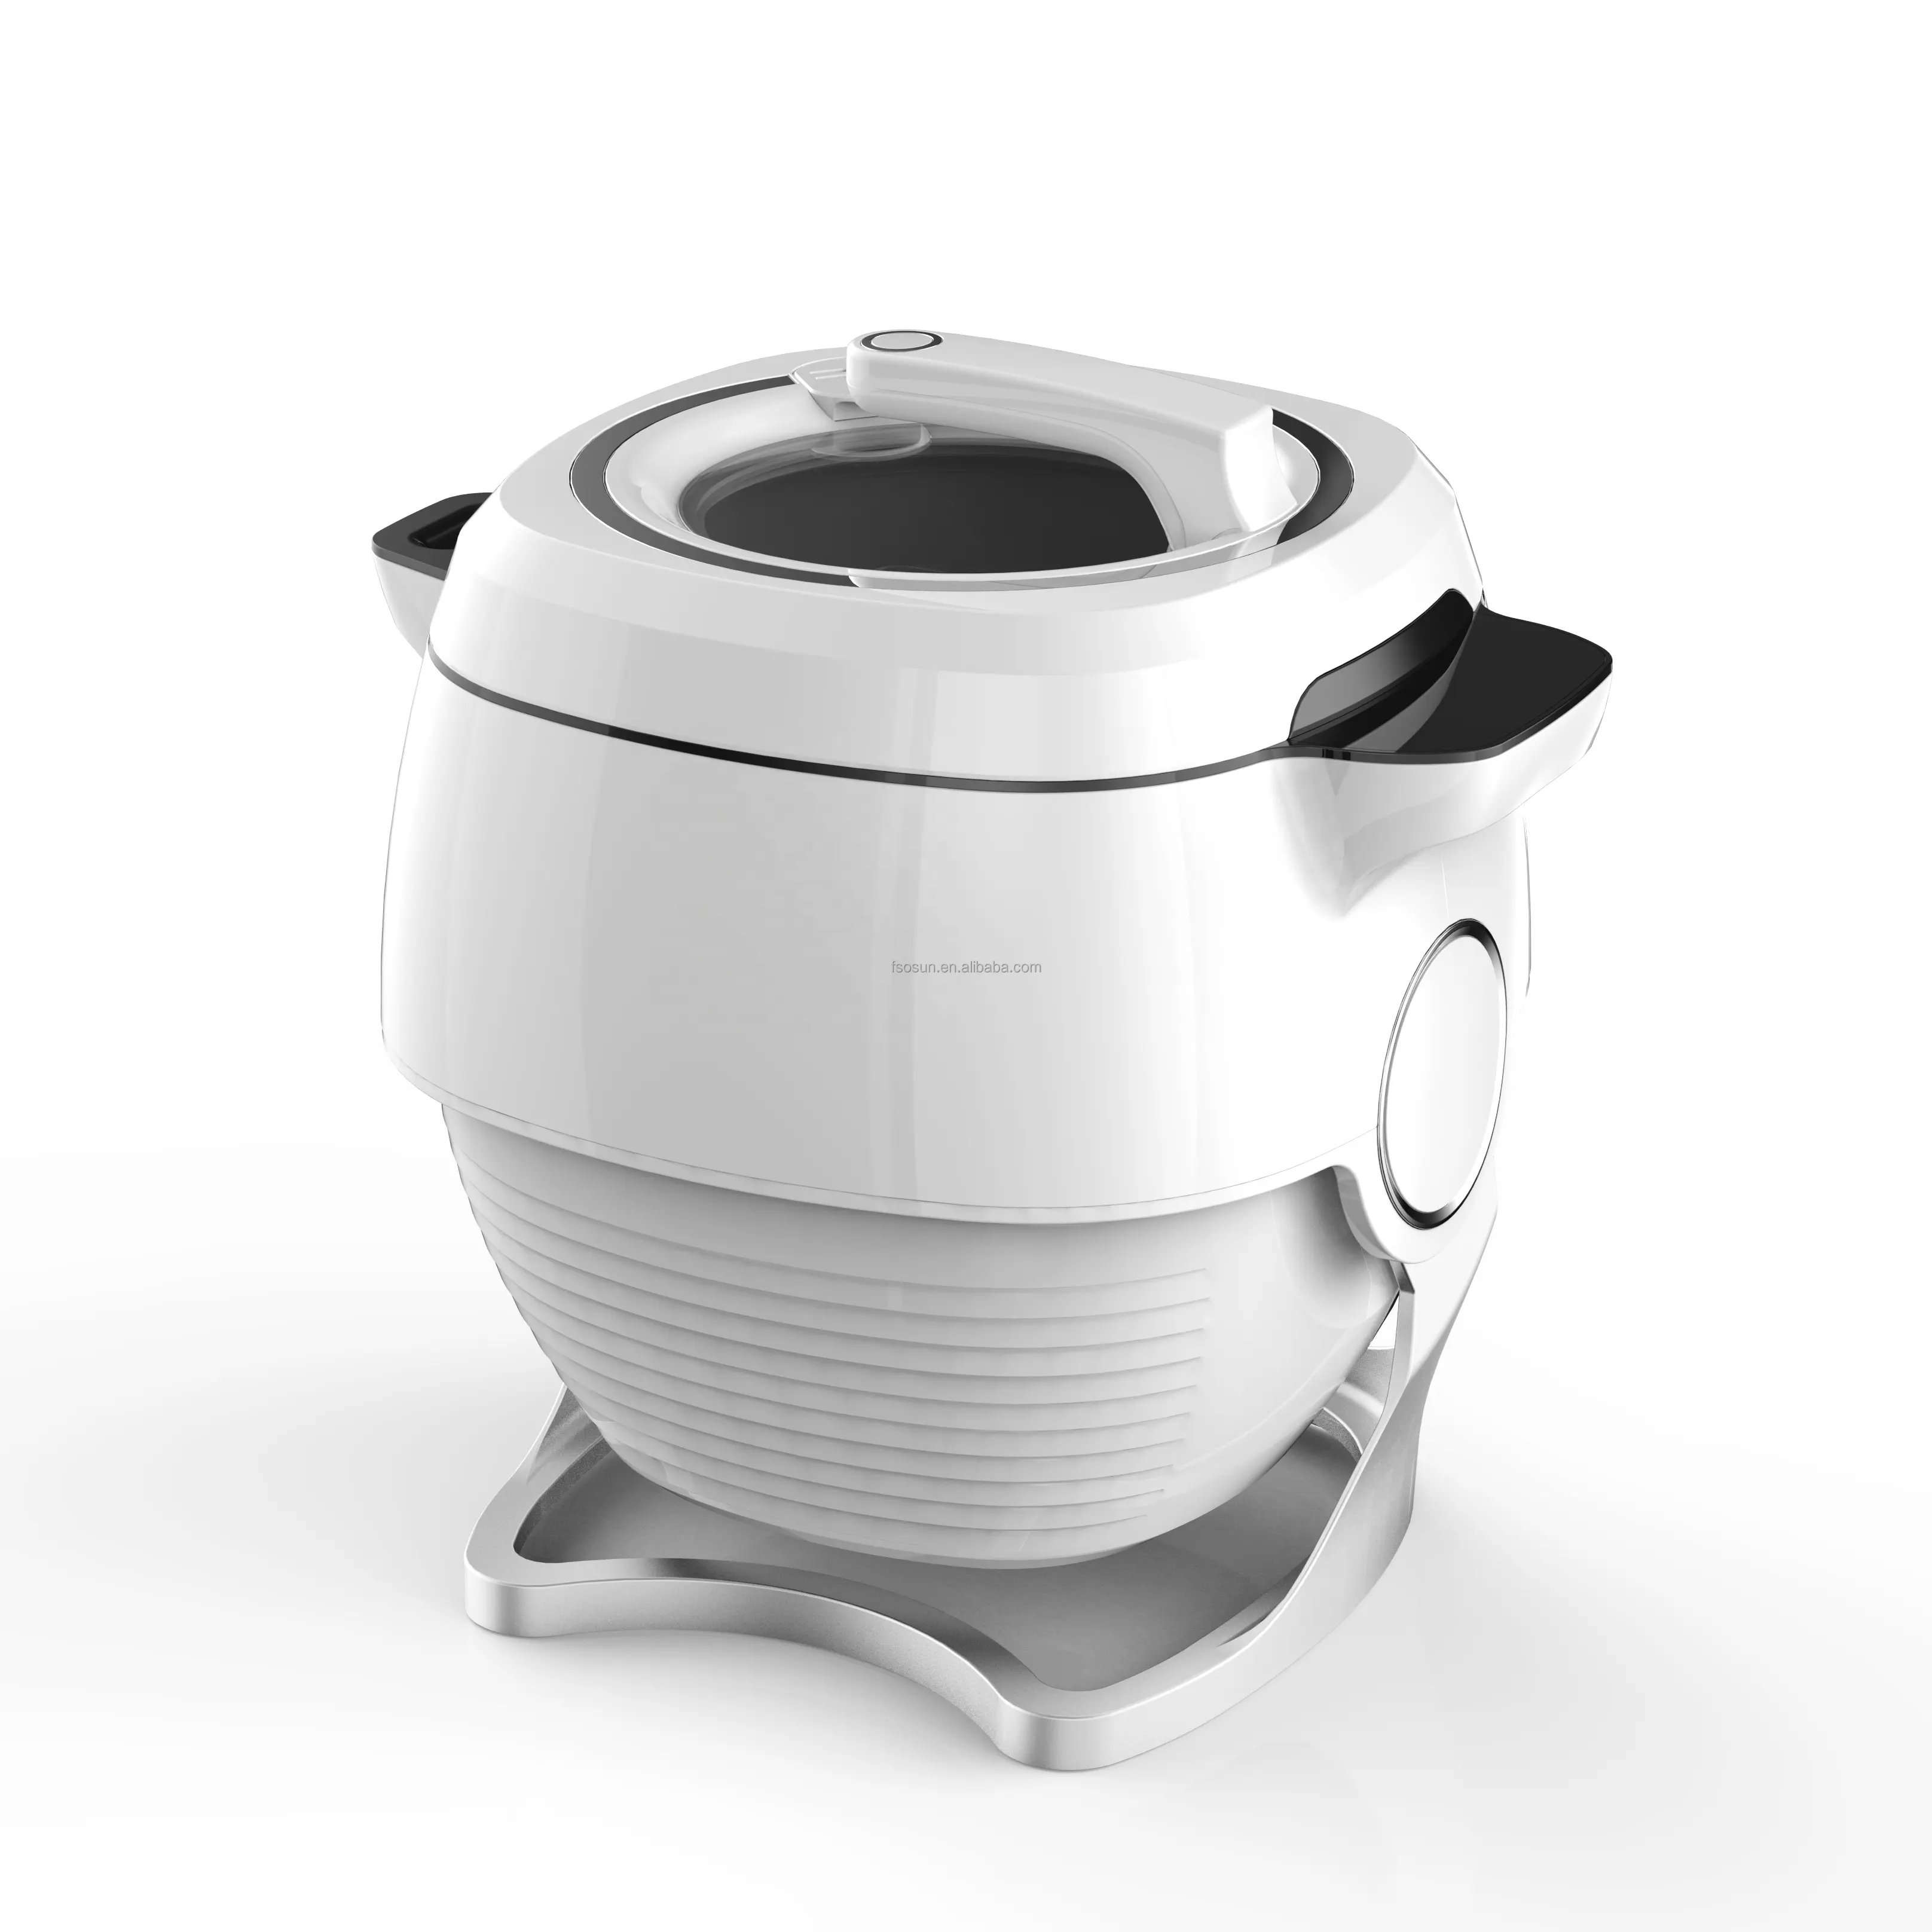 자동적인 로봇 요리 기구 자동 요리 기계 360 도 돌릴수 있는 혼란 프라이팬